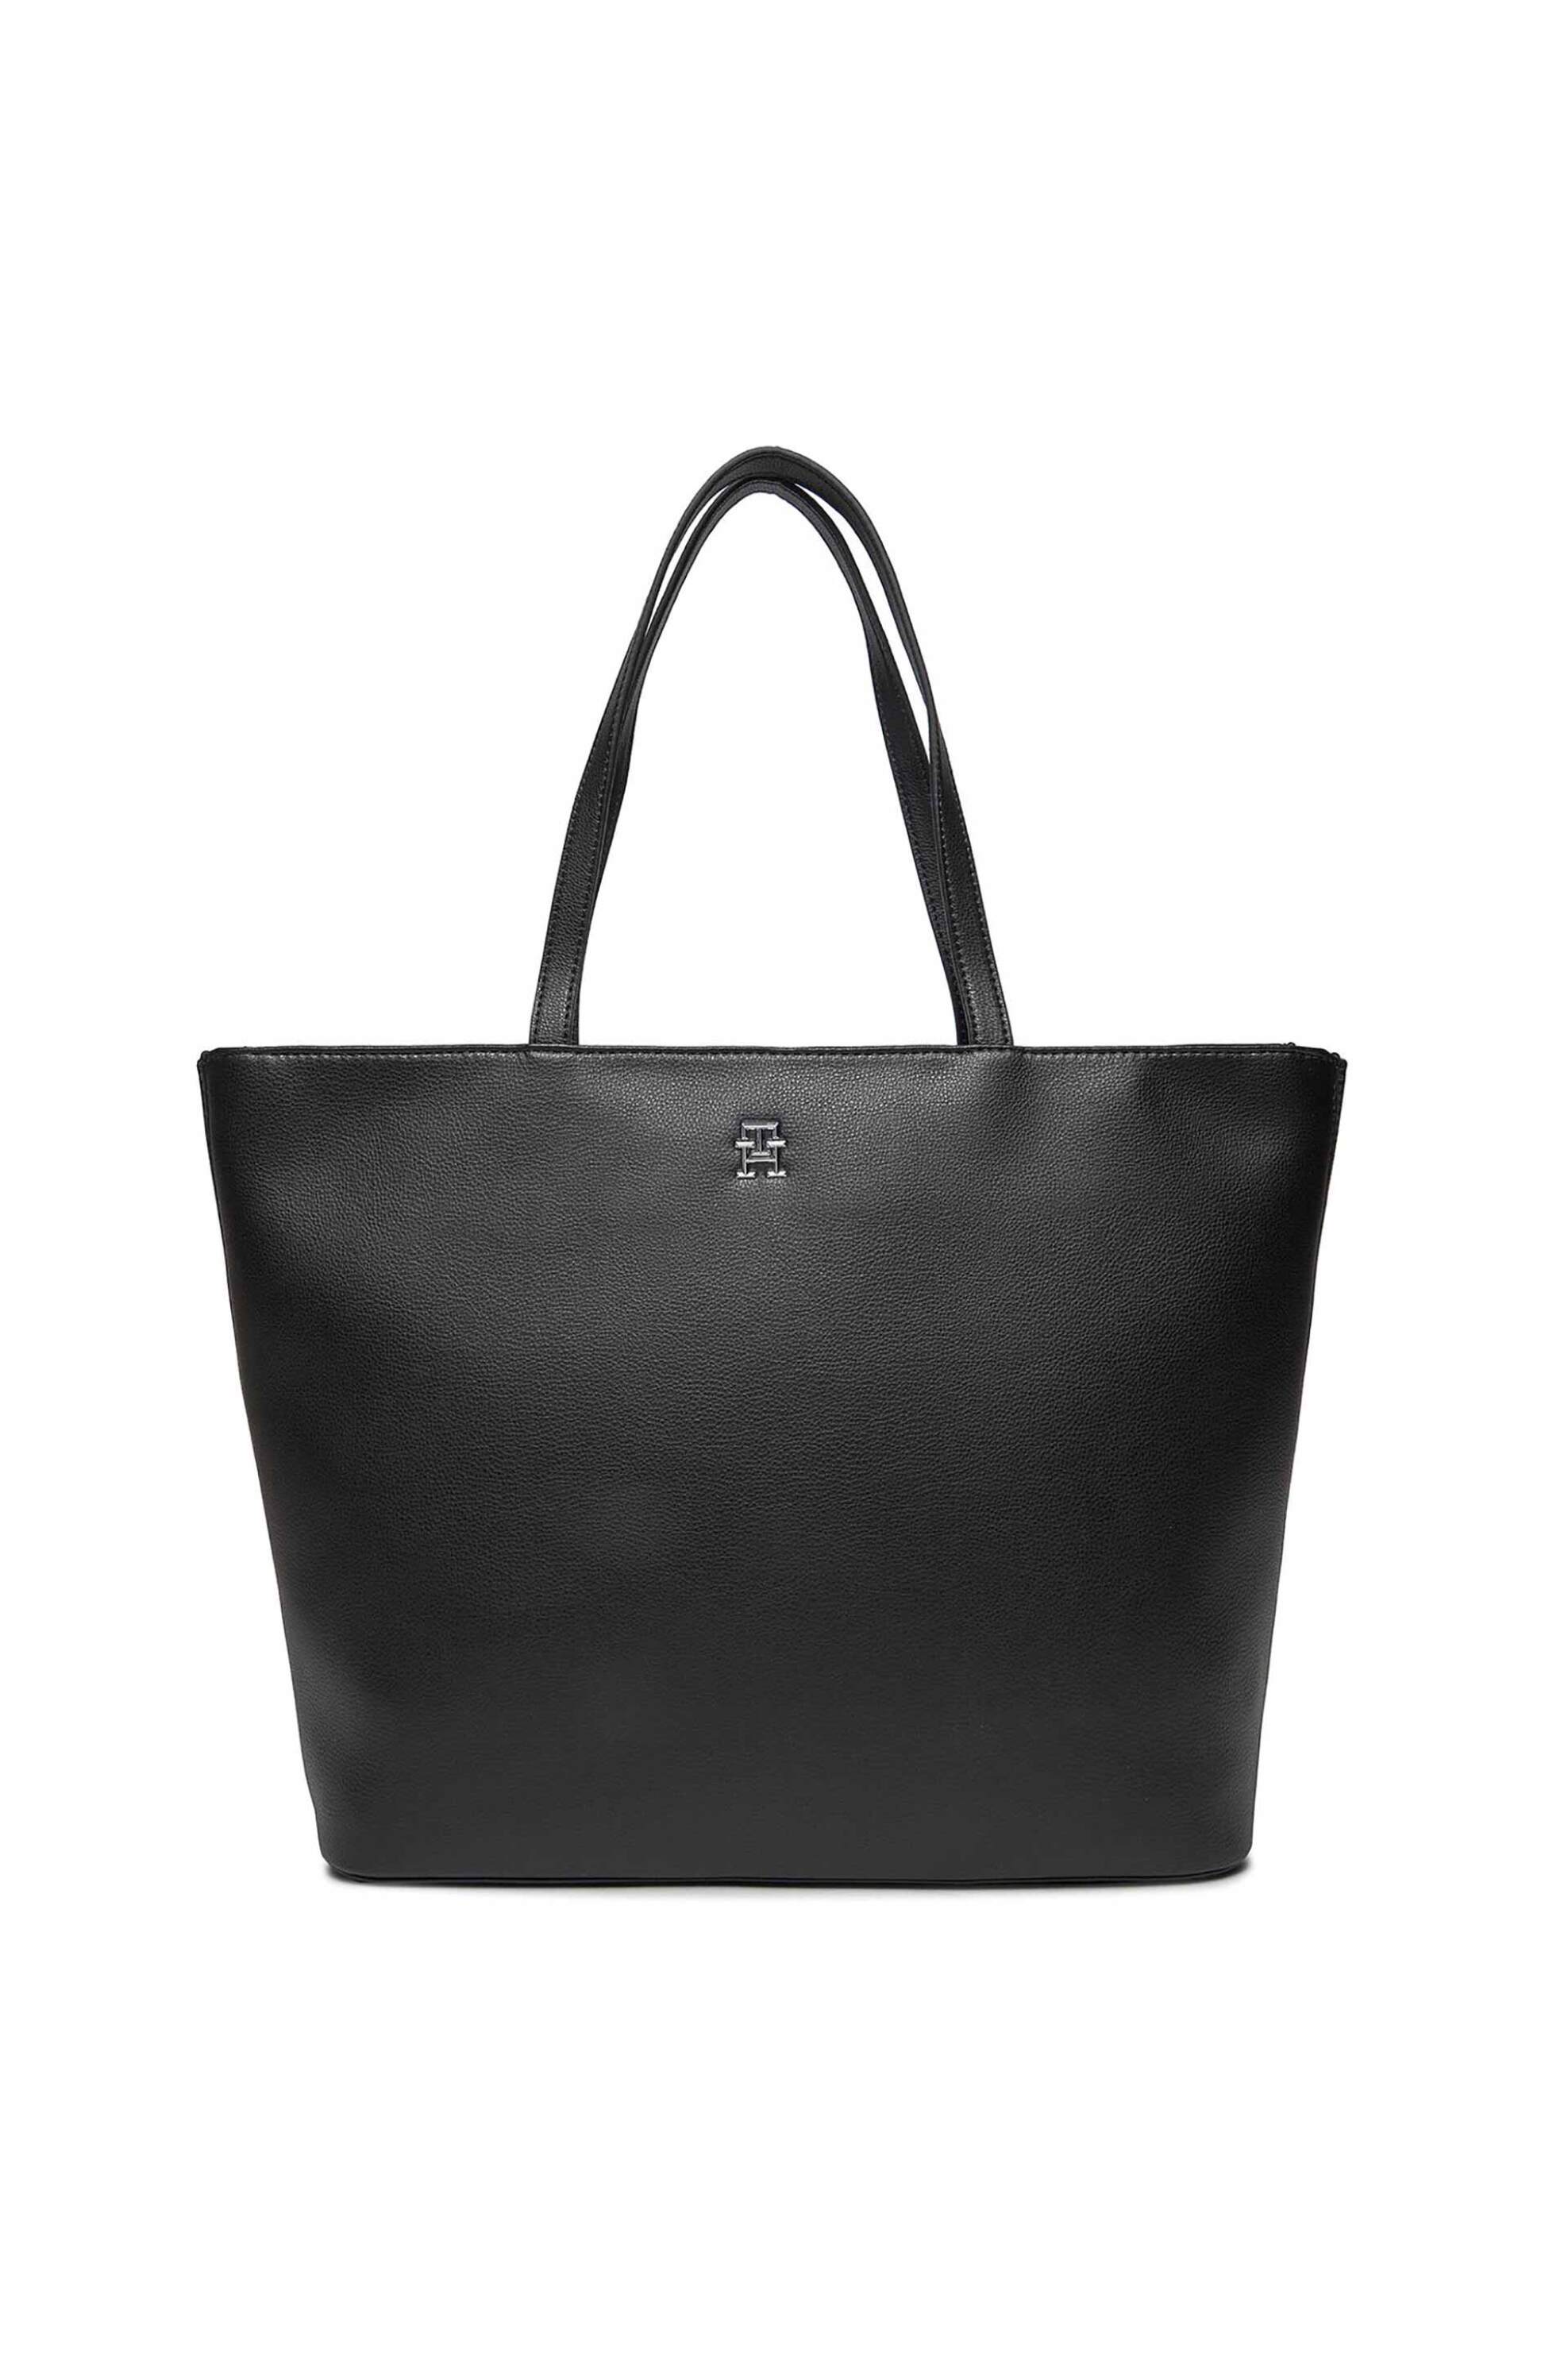 Γυναίκα > ΤΣΑΝΤΕΣ > Τσάντες Ώμου & Shopper Bags Tommy Hilfiger γυναικεία τσάντα tote faux leather με μεταλλικό λογότυπο - AW0AW15720 Μαύρο